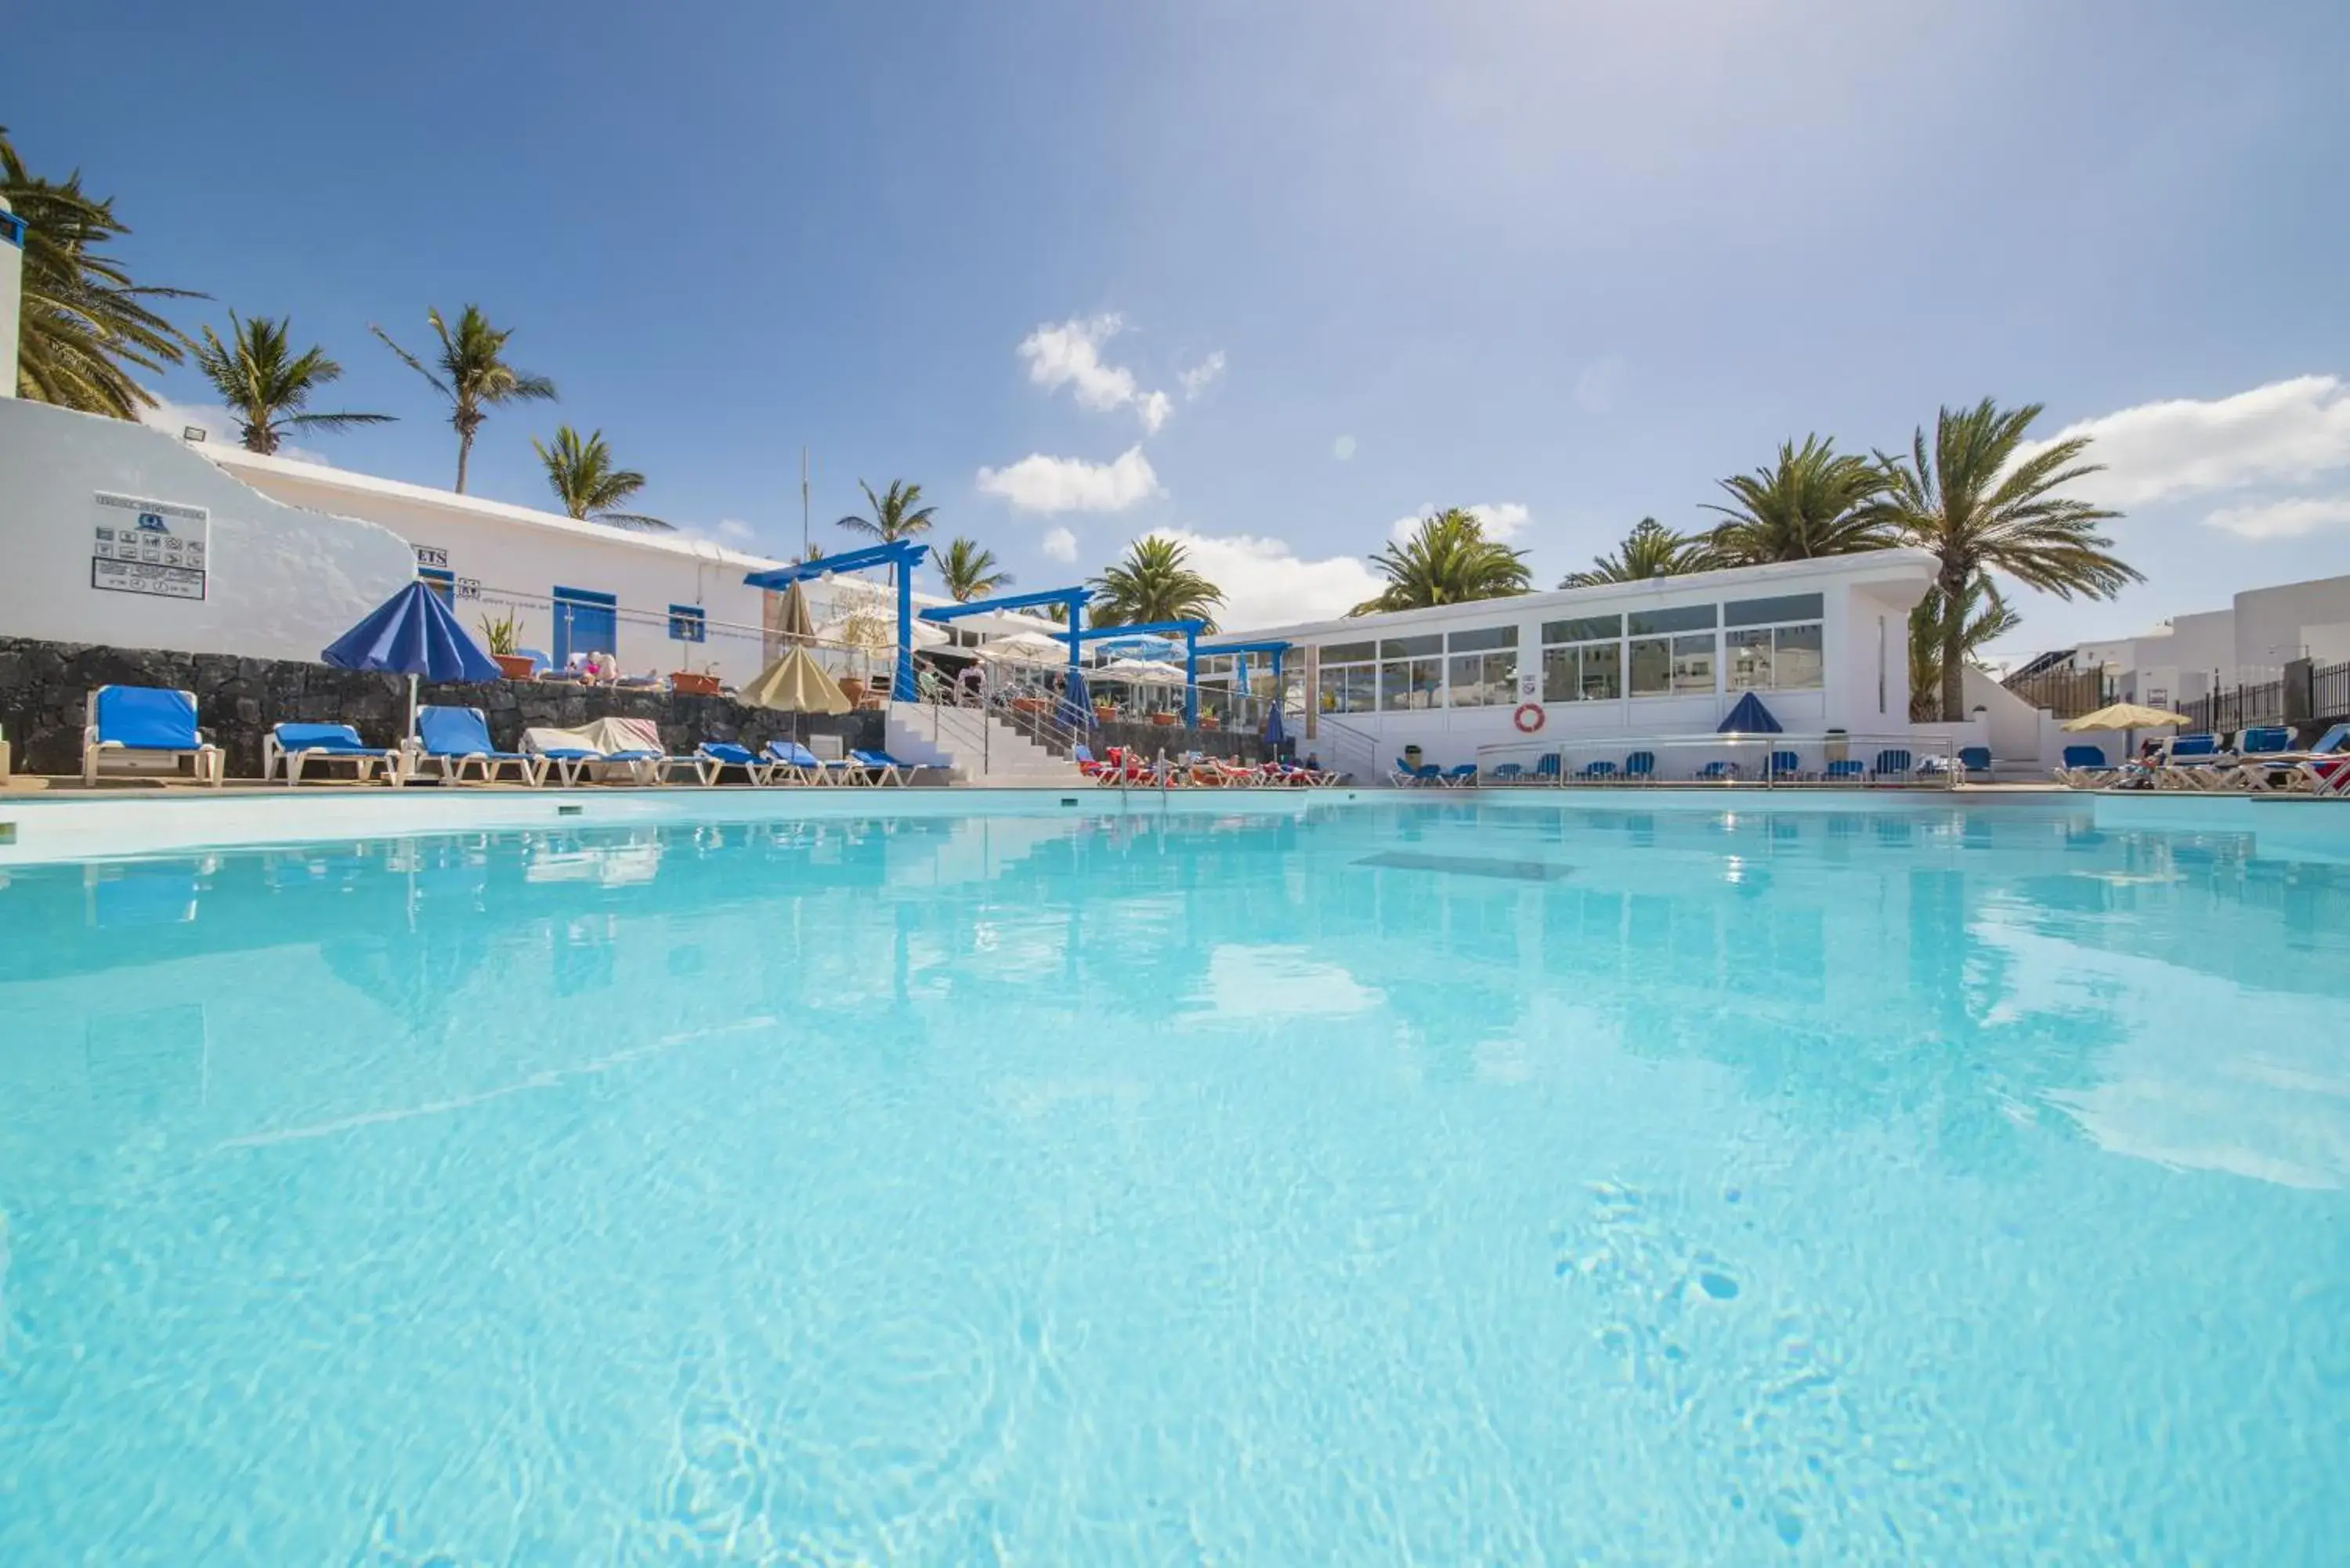 Swimming Pool in Jable Bermudas